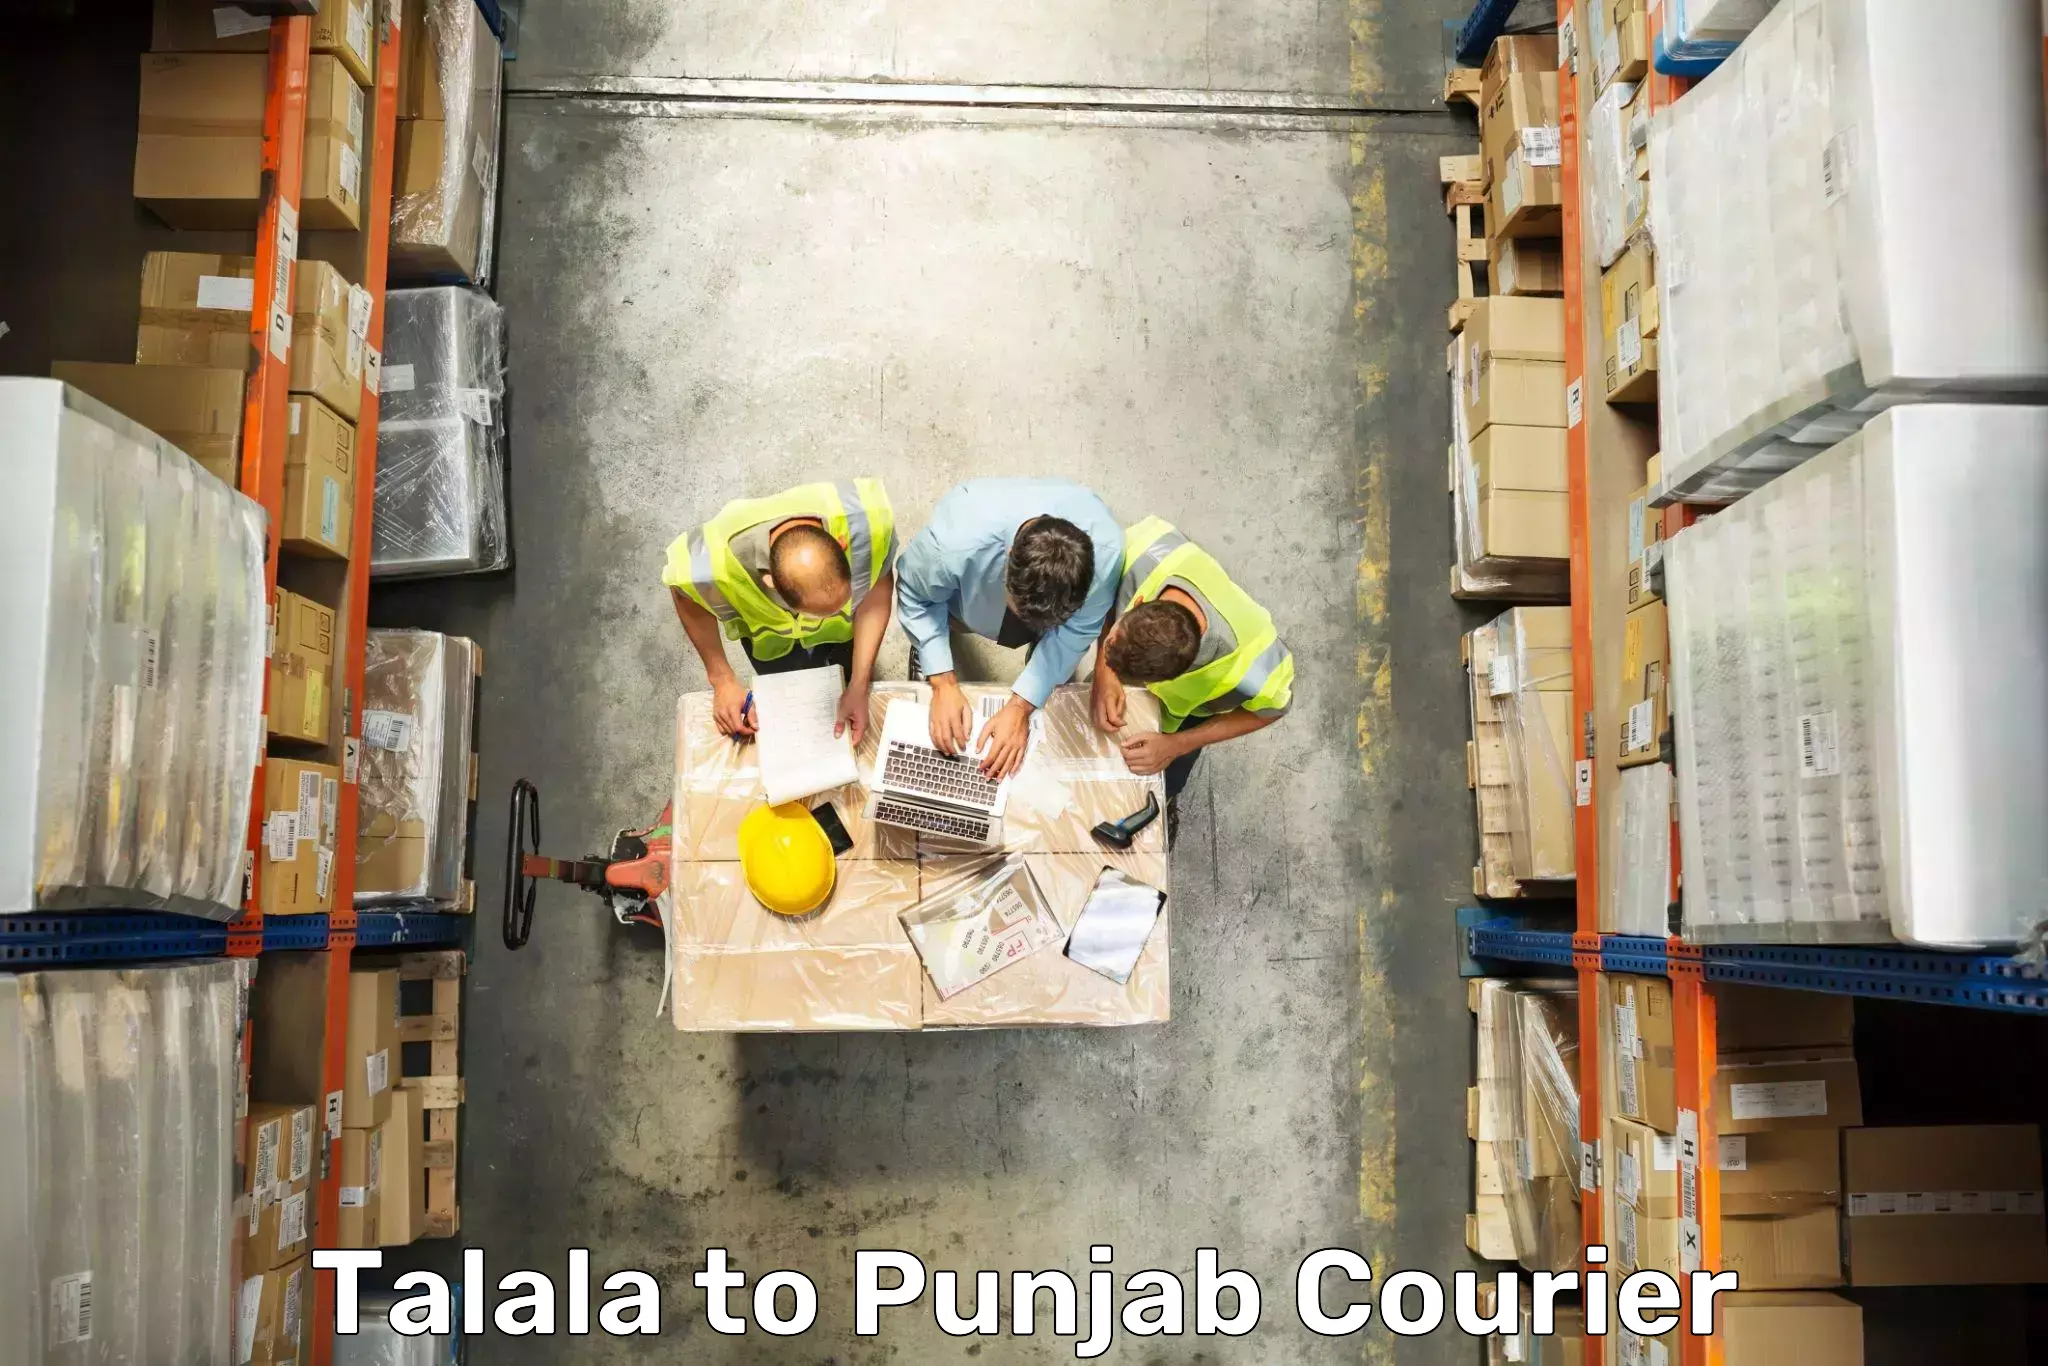 Luggage transit service Talala to Punjab